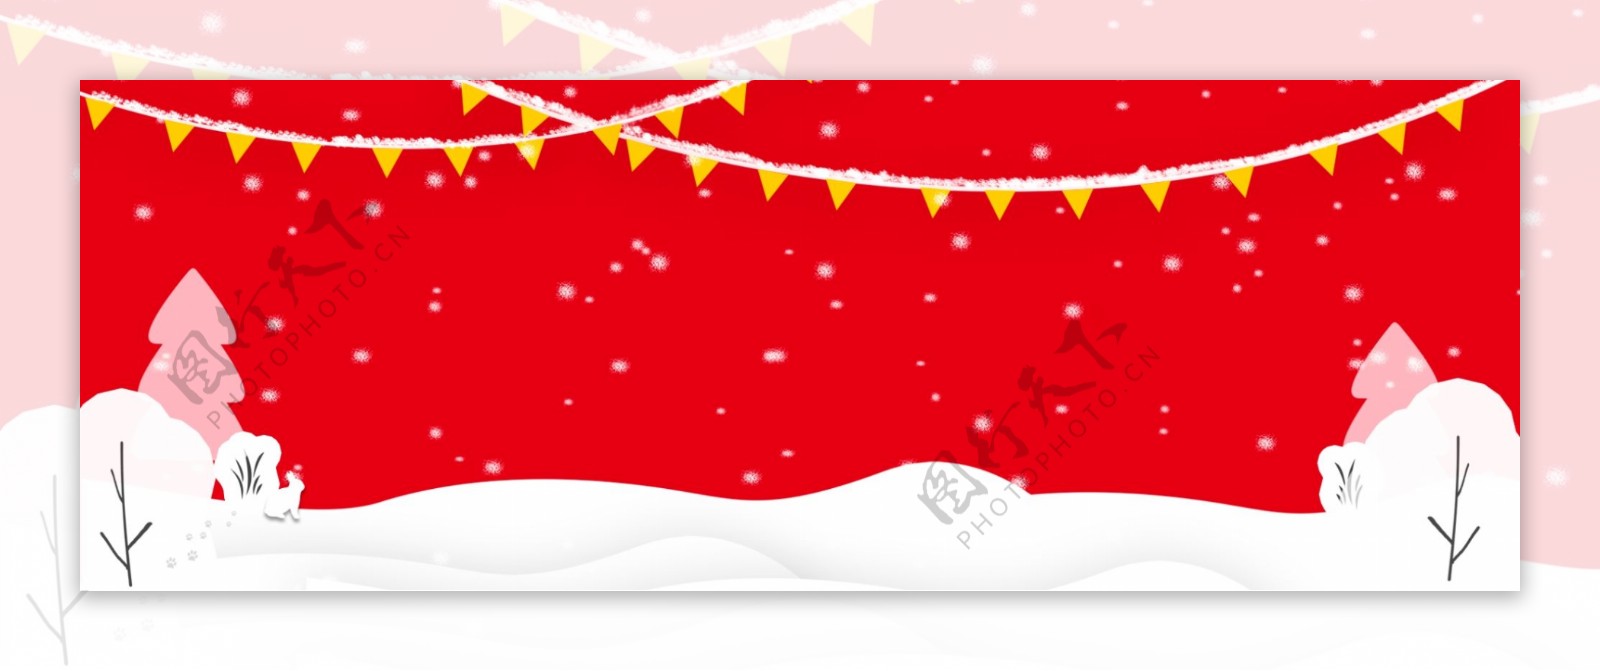 冬季红色下雪背景拉花喜庆卡通海报